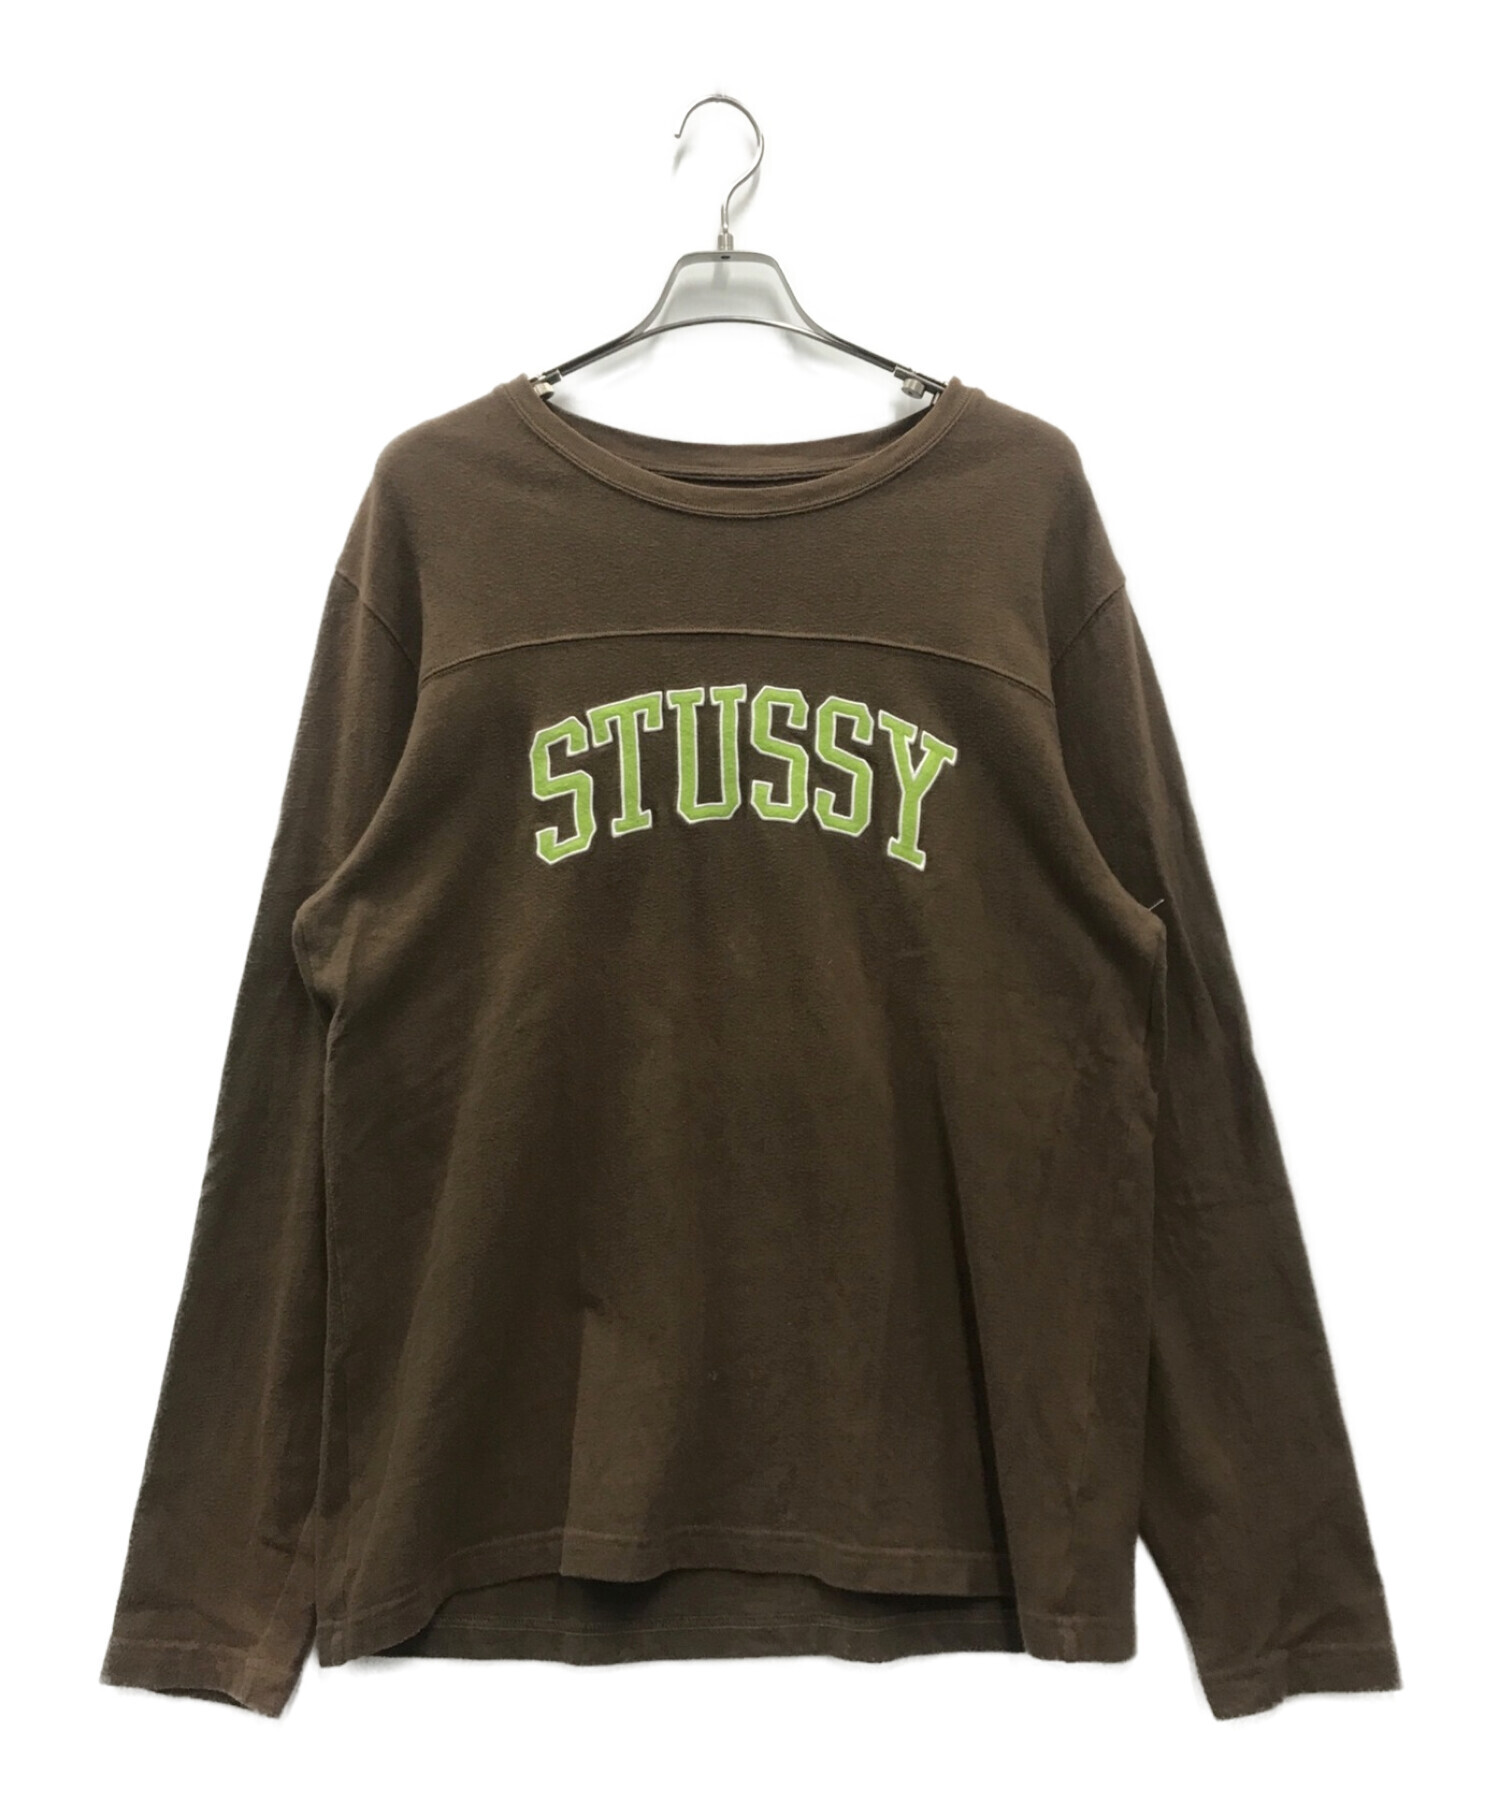 中古・古着通販】stussy (ステューシー) アーチ刺繍ビッグロゴ 